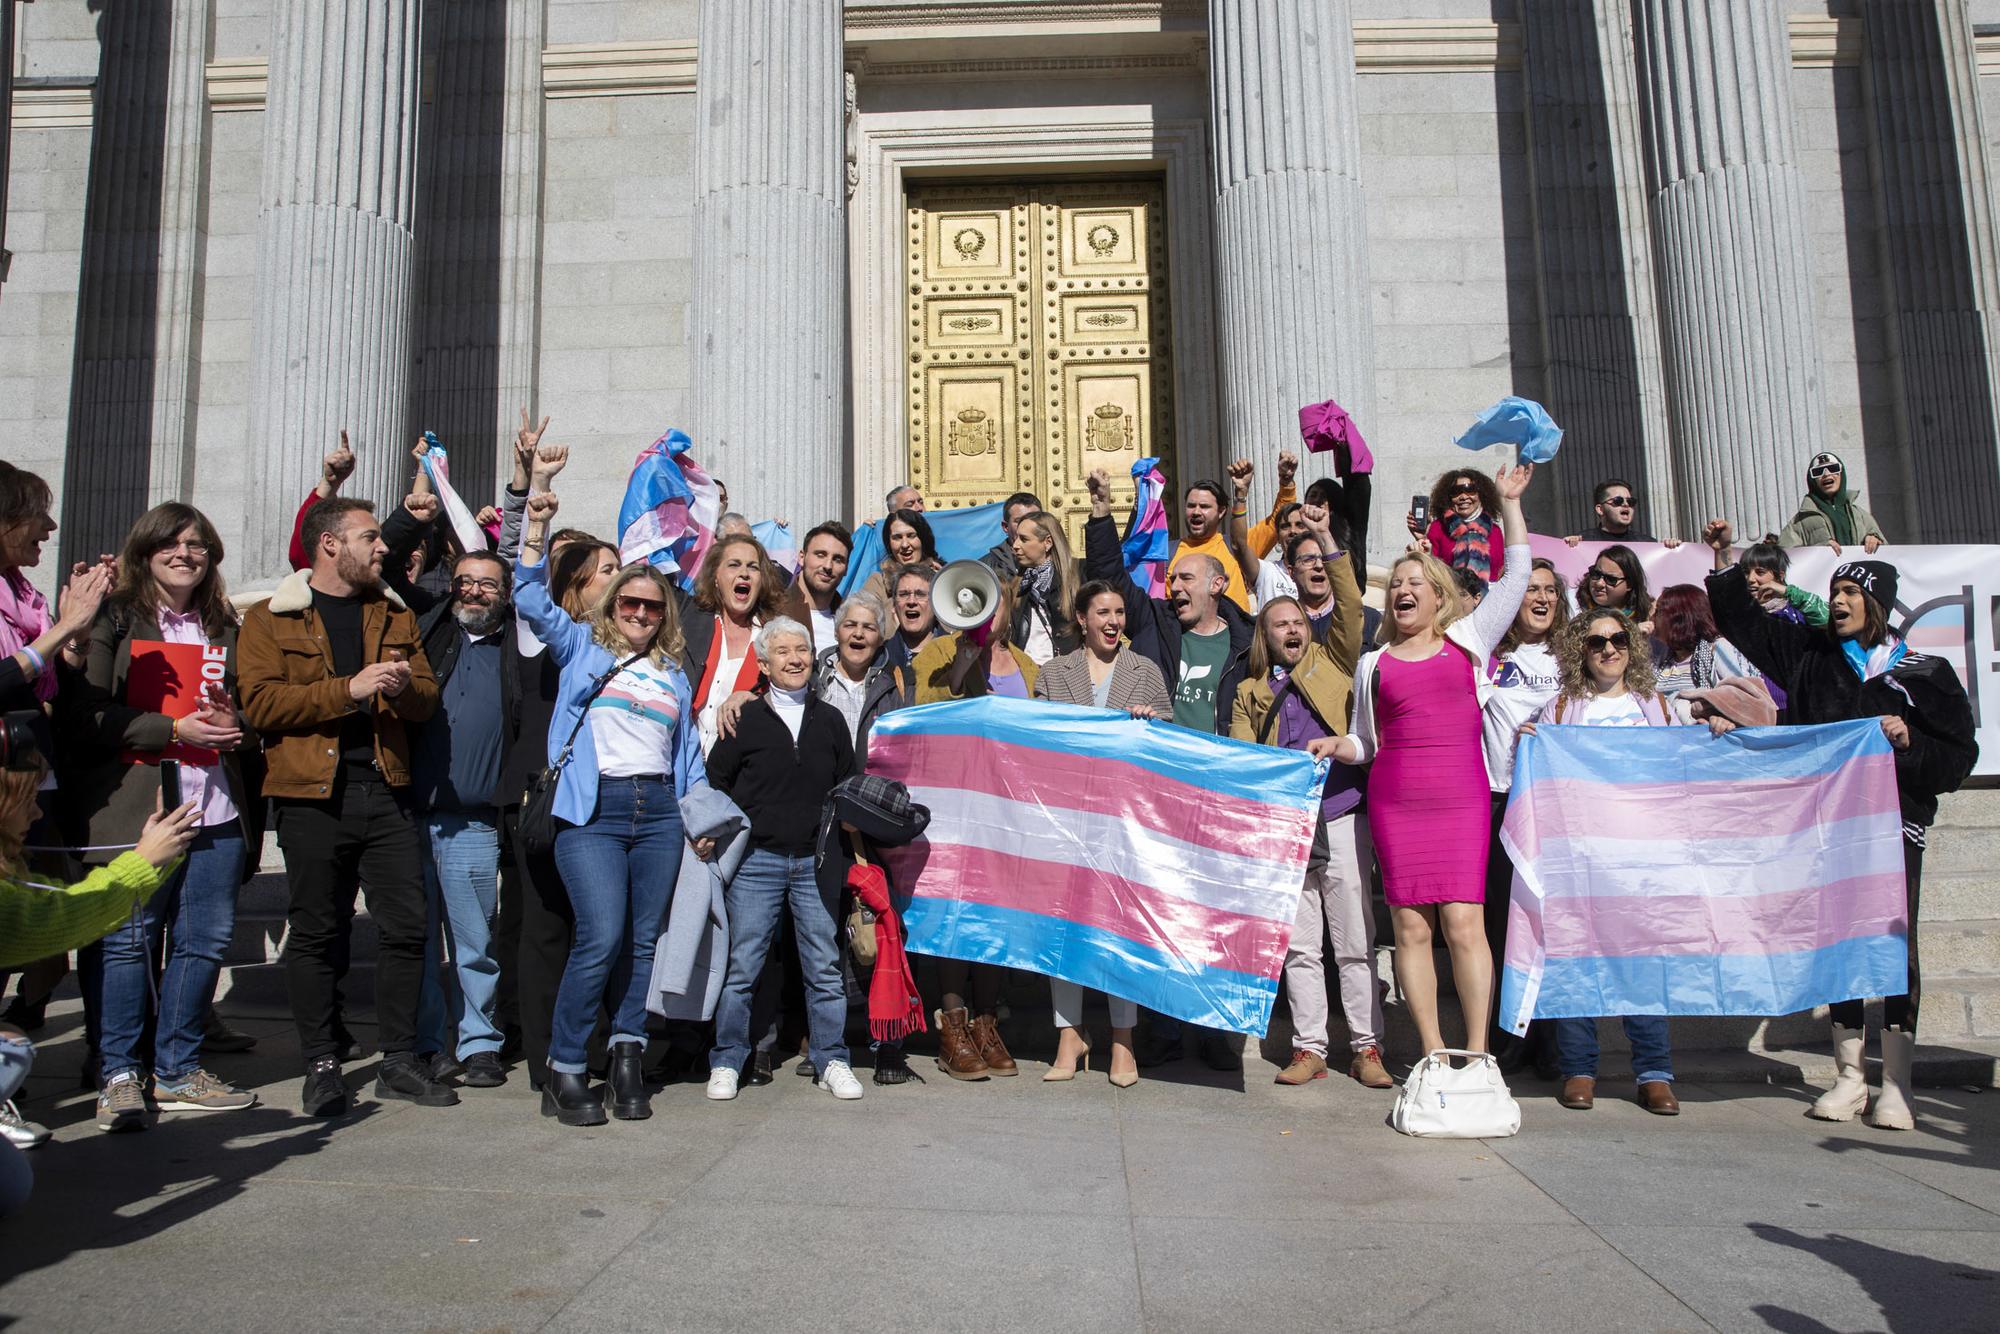 Congreso votacion Ley trans reforma aborto - 23 Escalinatas Ley Trans